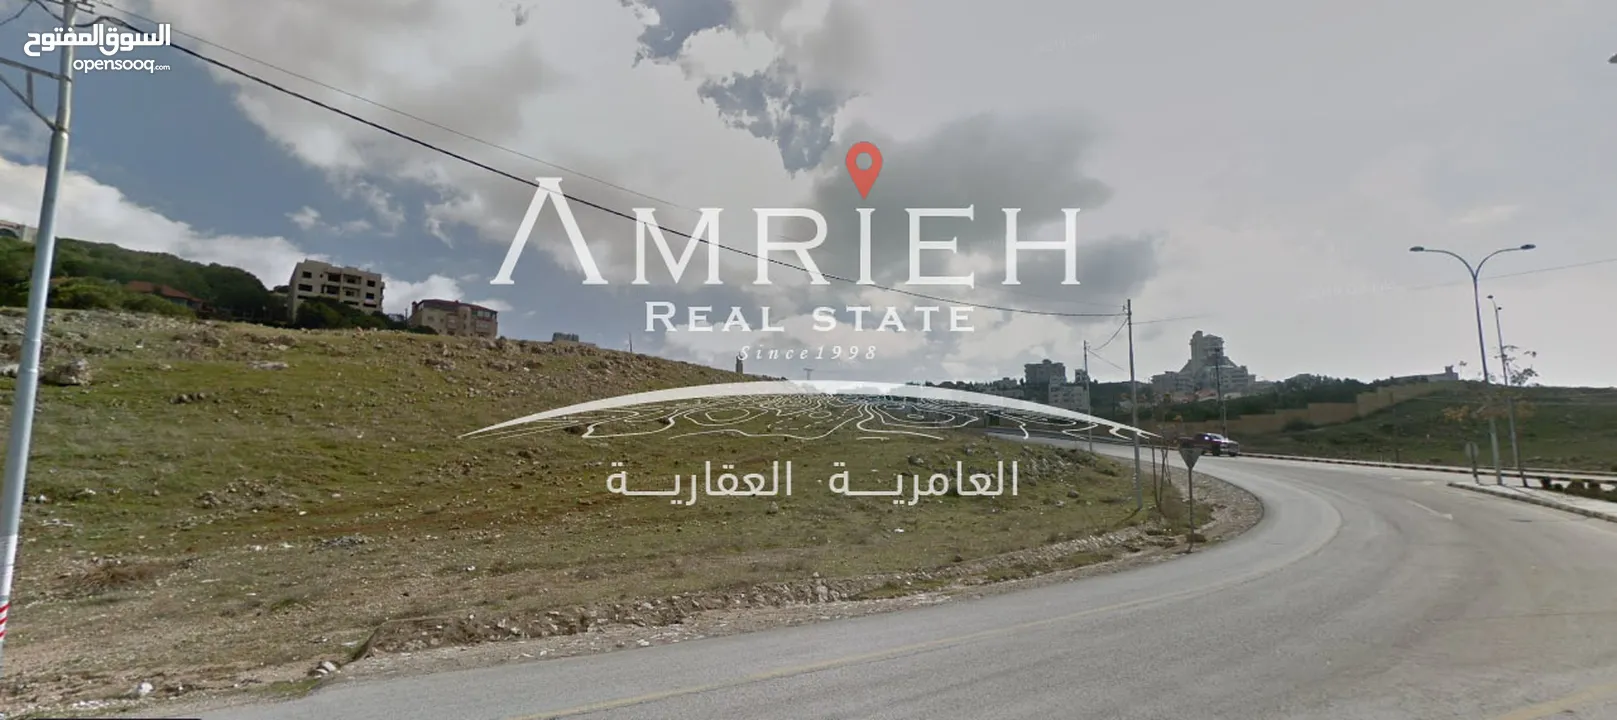 ارض 575 م للبيع في رجم عميش / بالقرب من مسجد الفاتح .